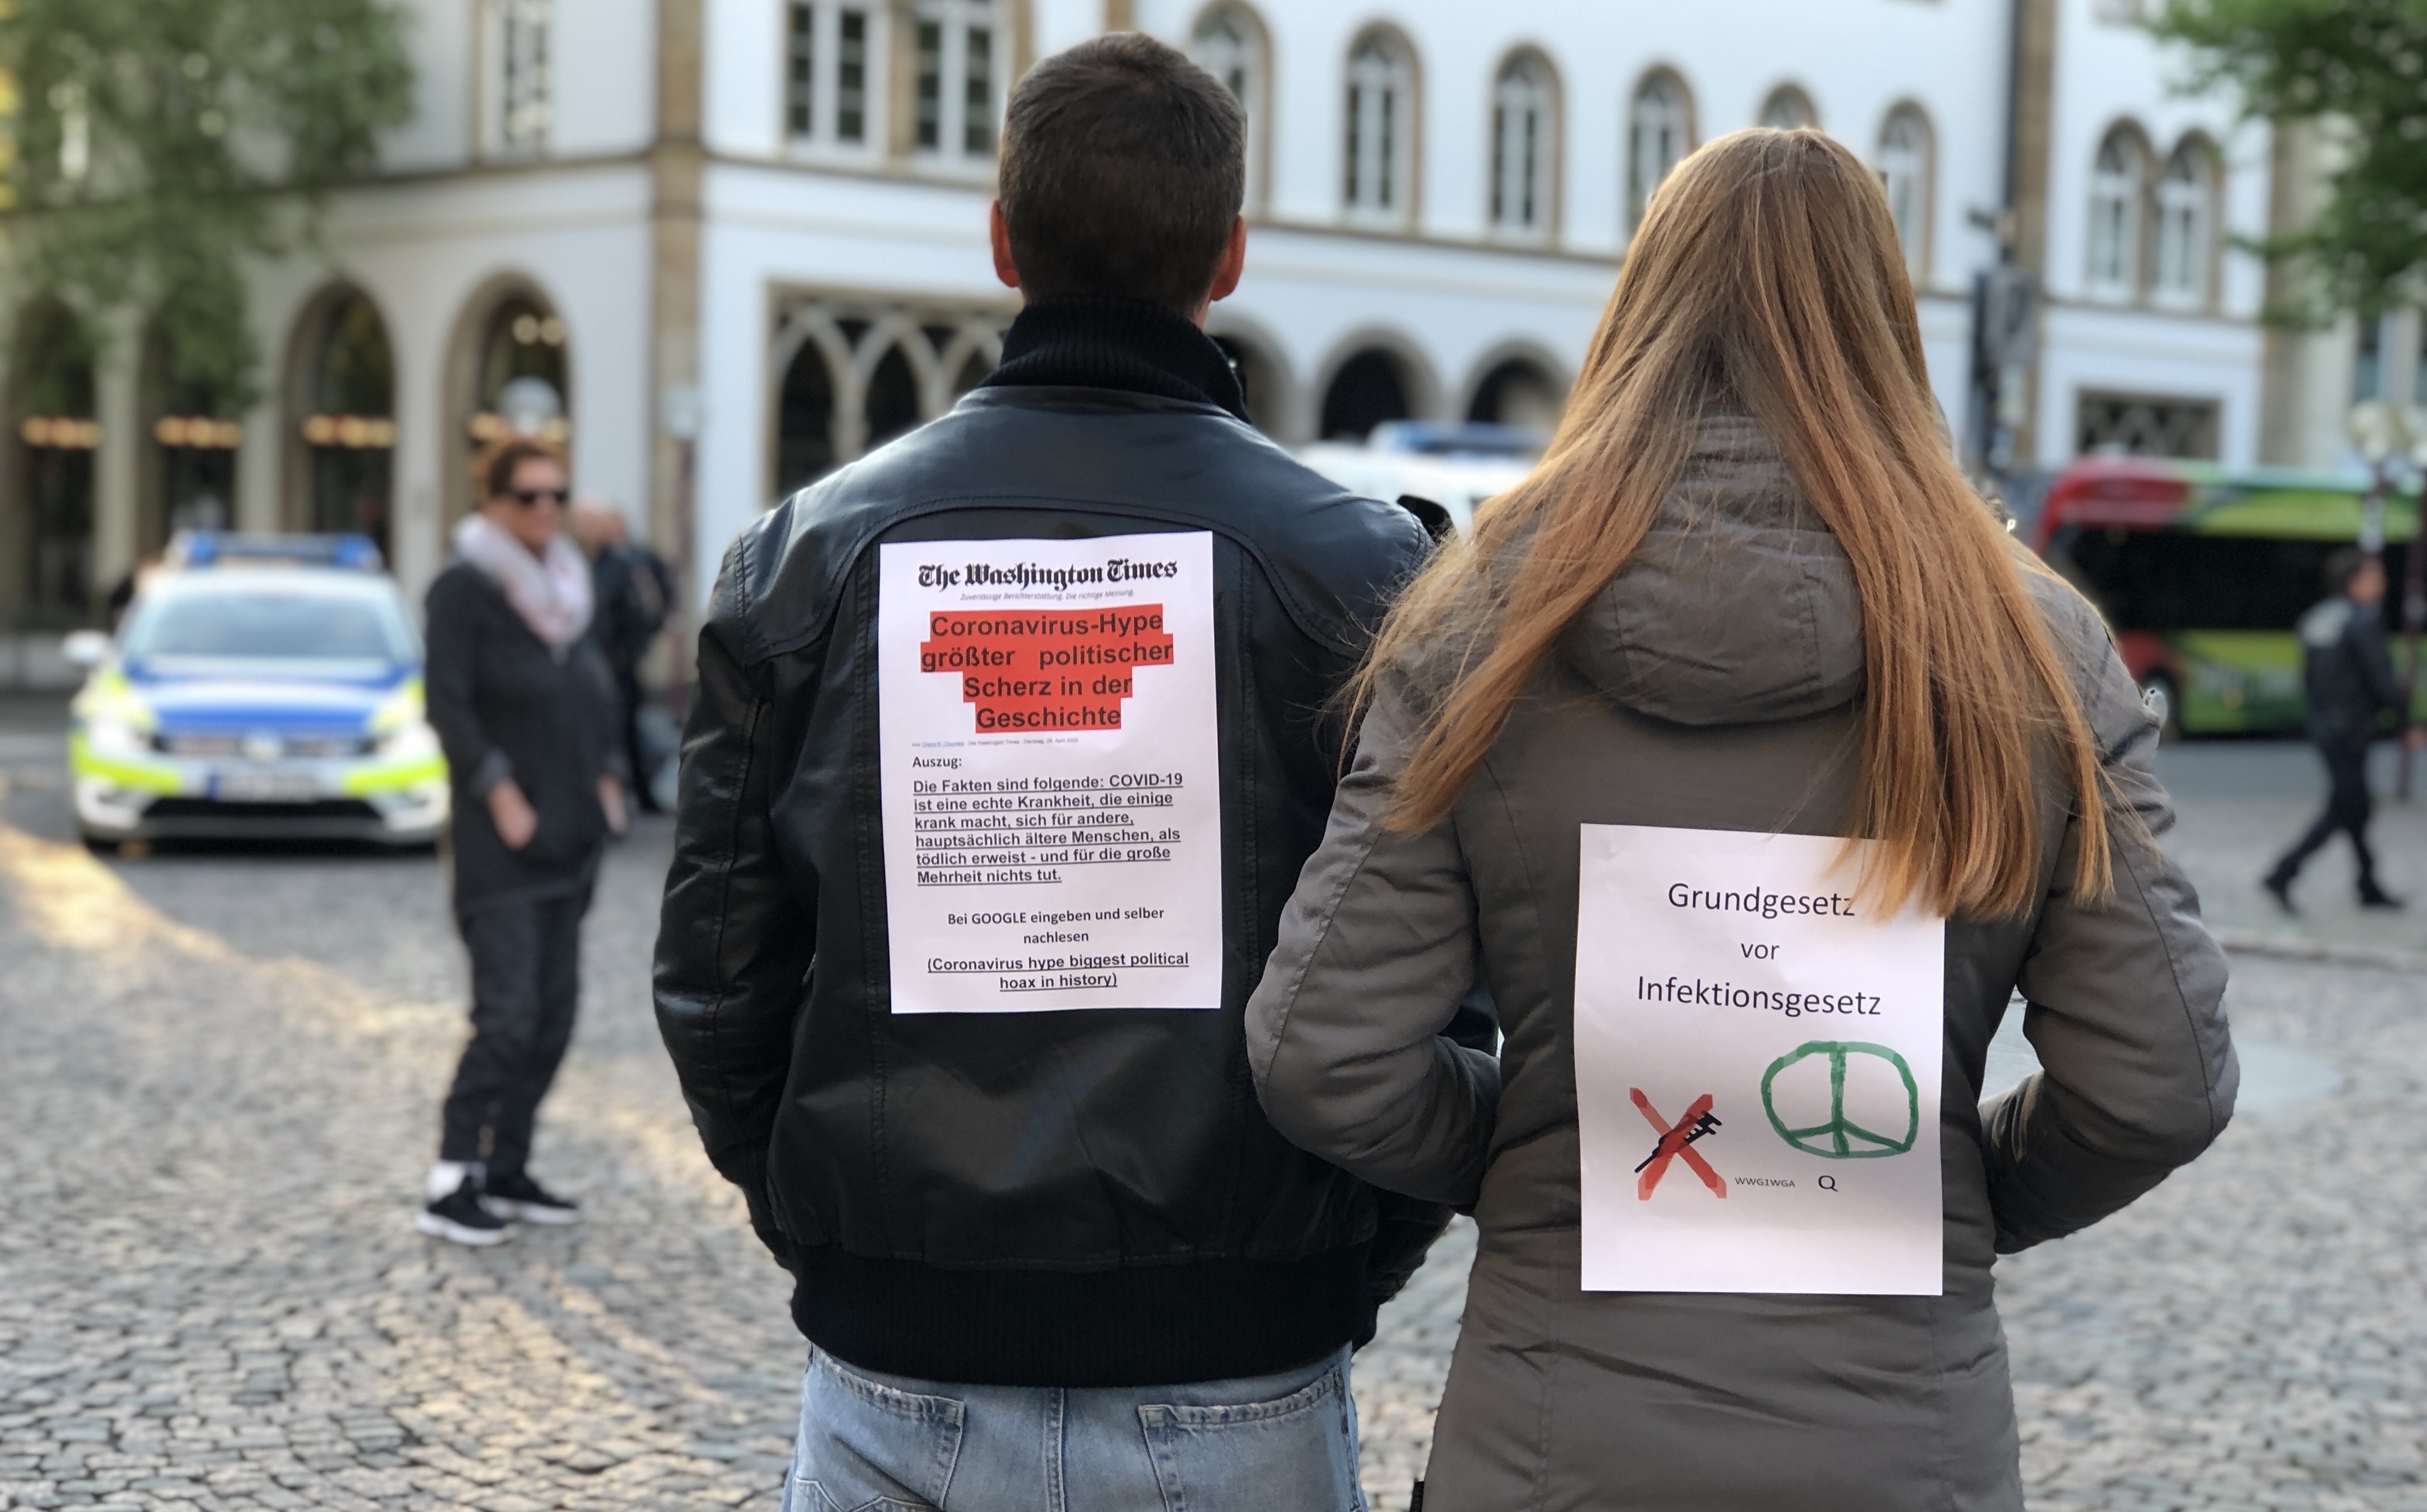 "Grundgesetz vor Infektionsgesetz": Spaziergänger mit "Motto-Jacken"